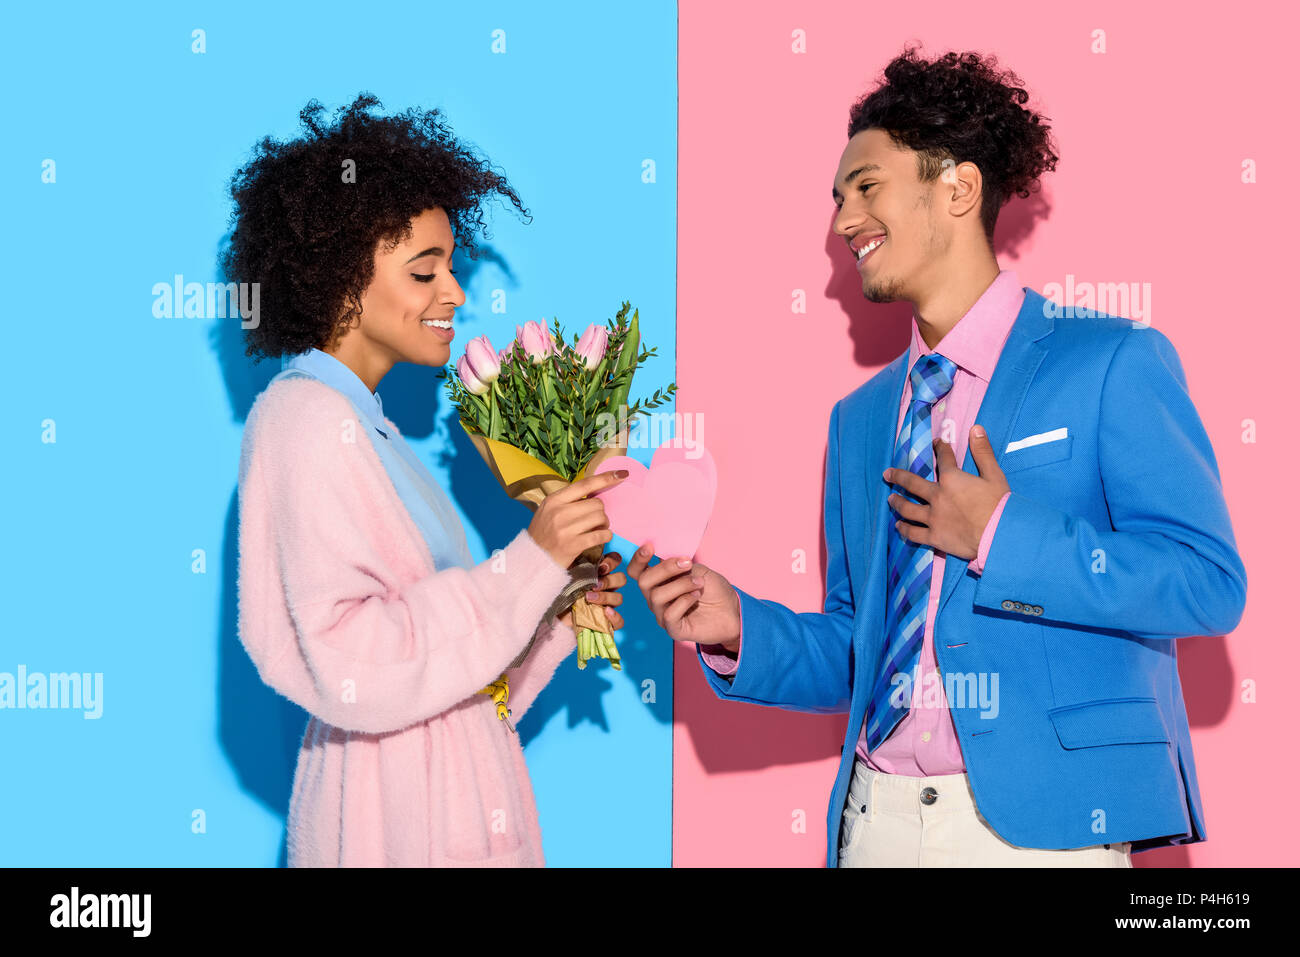 Young African American man girl offre un bouquet de fleurs et coeur carte sur fond bleu et rose Banque D'Images